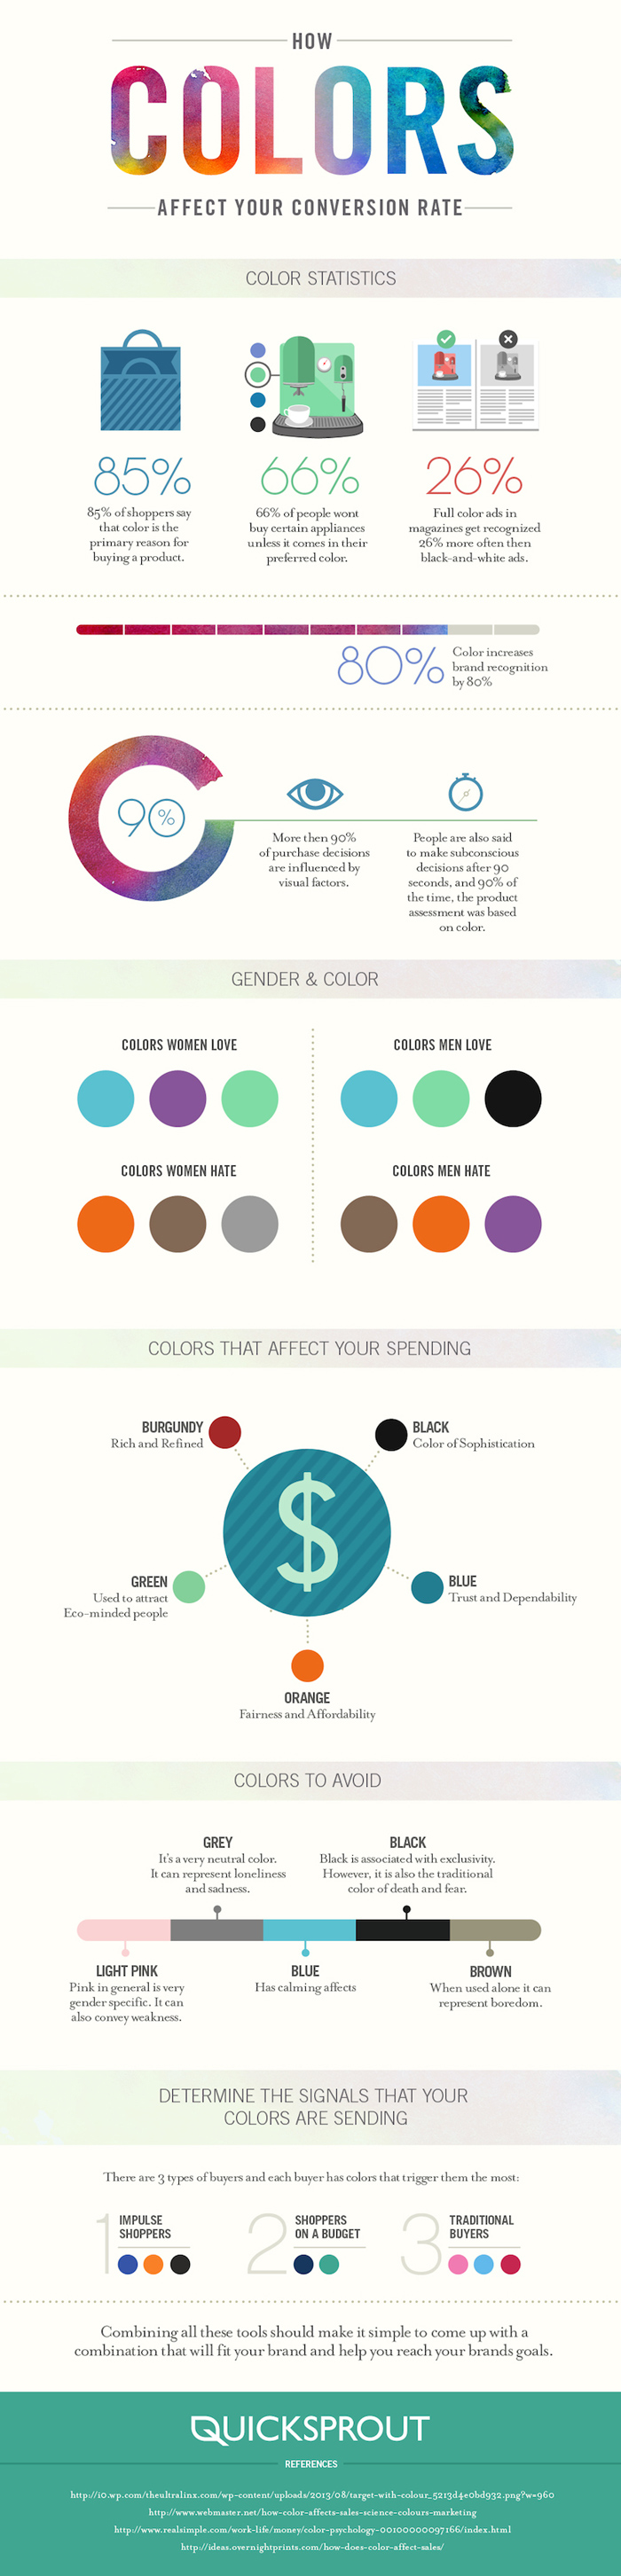 Cómo afectan los colores el porcentaje de conversión - Infografía